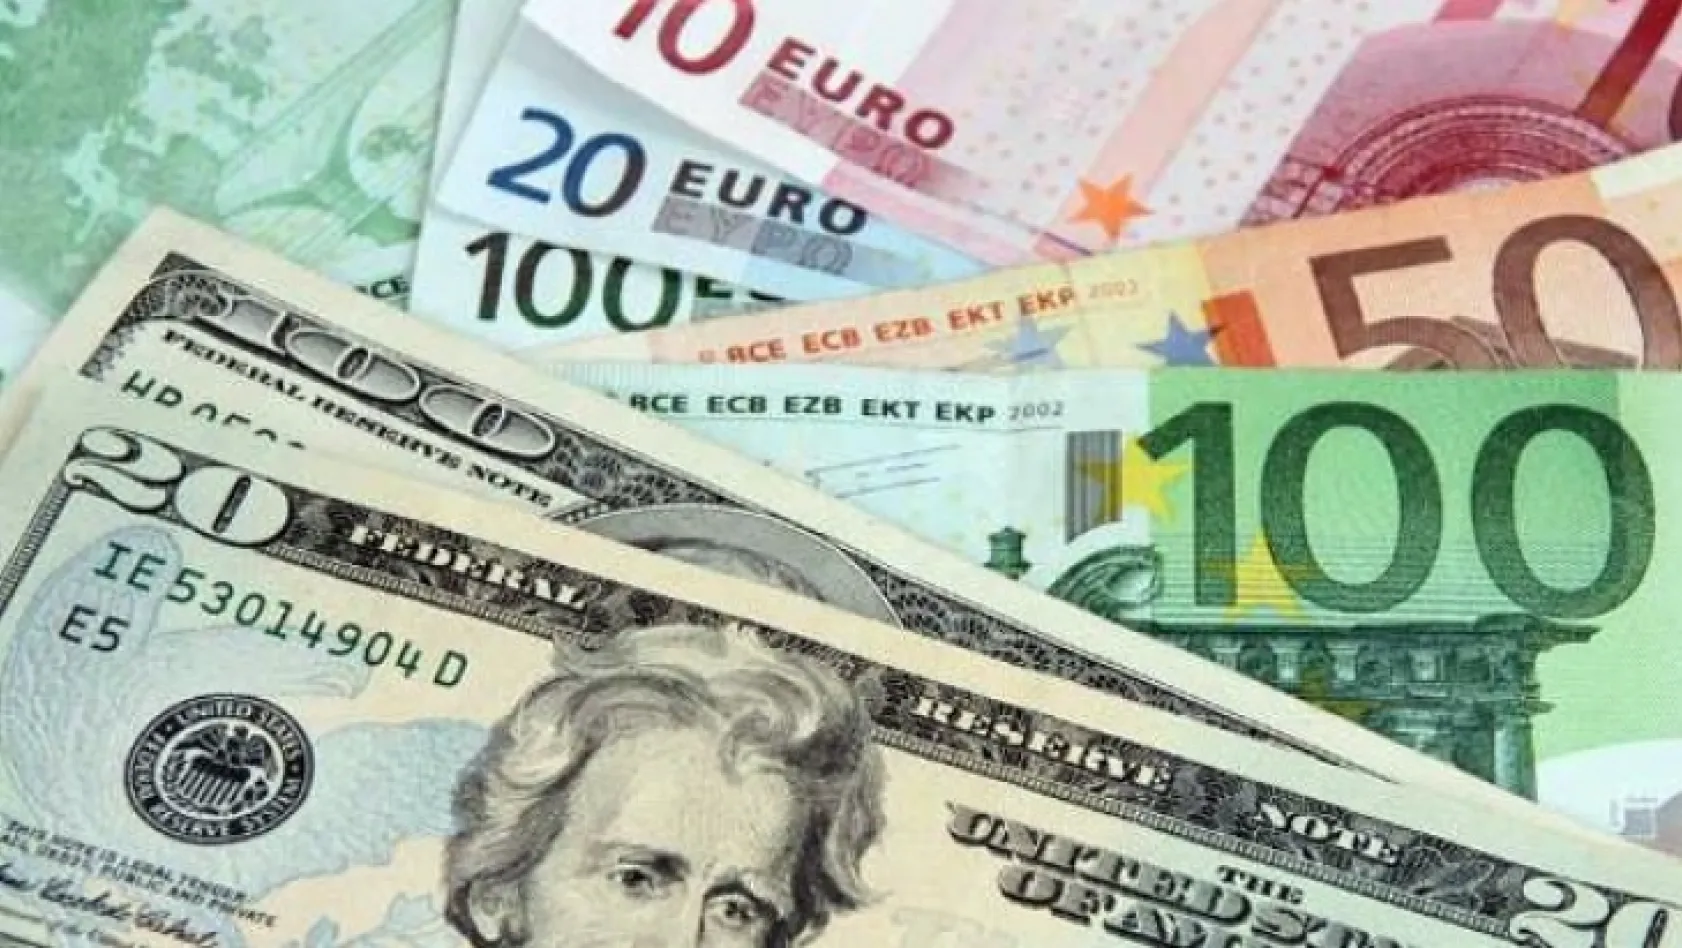 Dolar ve euro bugün ne kadar? (18 Kasım 2018 dolar - euro fiyatları)